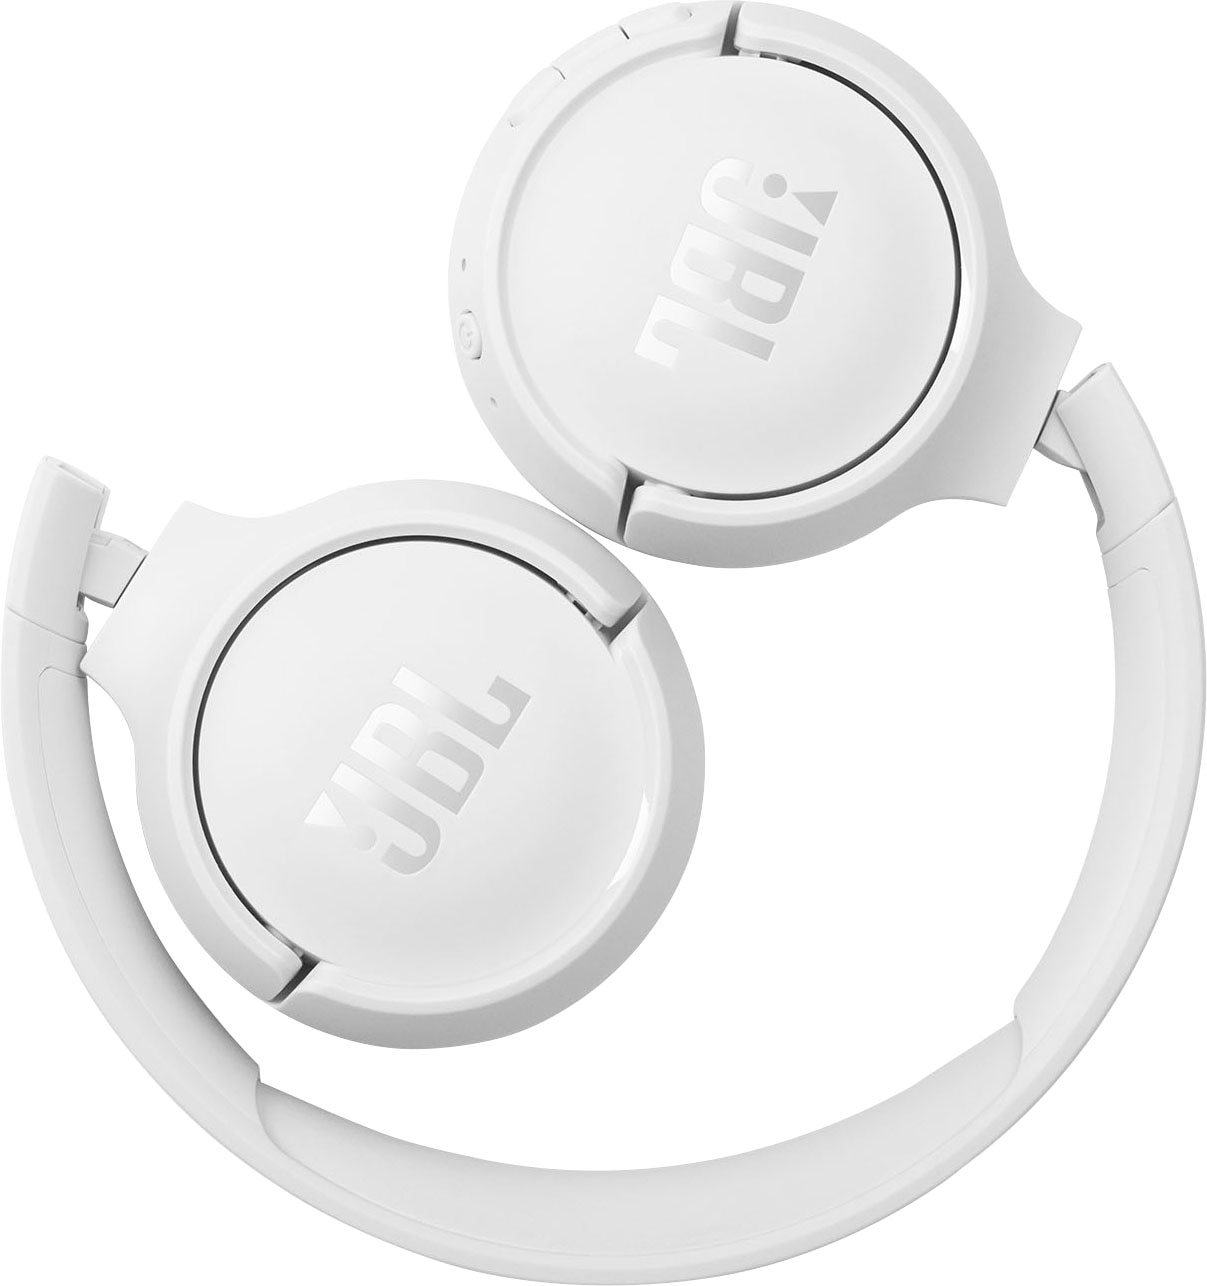 jetzt Siri, T510 »TUNE BT«, Now OTTO JBL Sprachsteuerung-kompatibel mit Google Online im On-Ear-Kopfhörer Shop